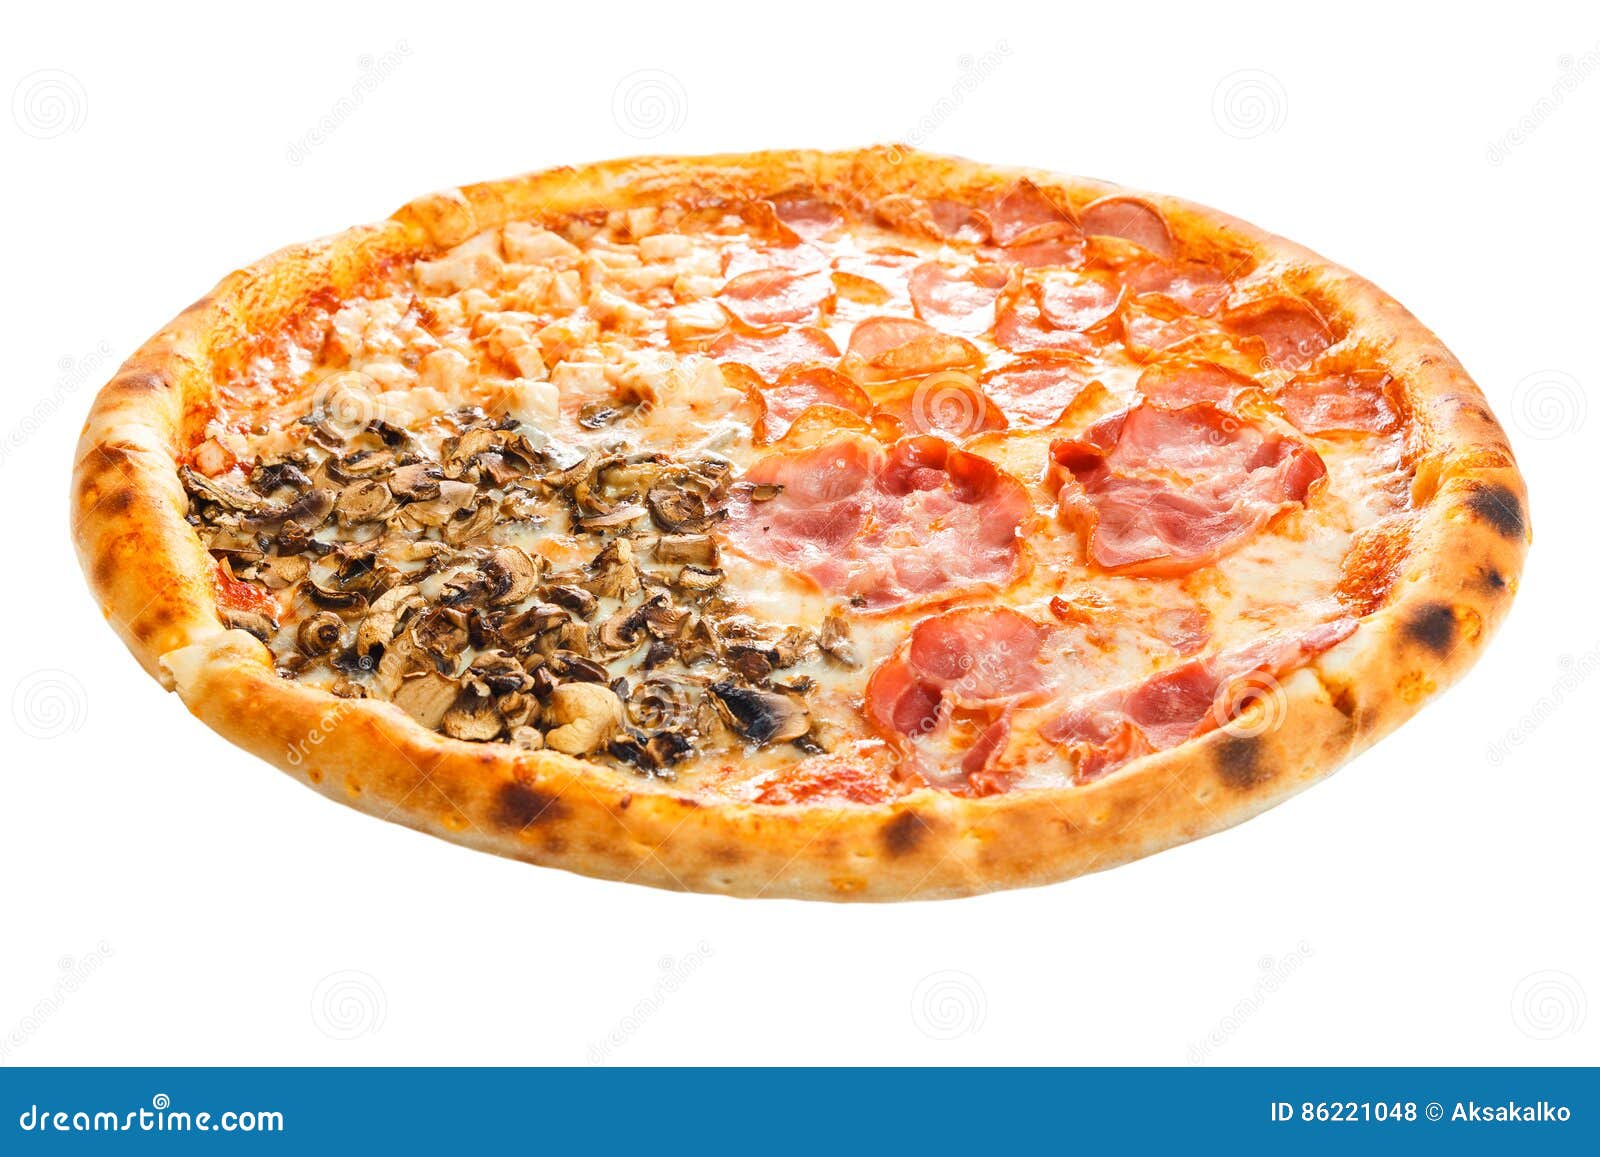 итальянская пицца четыре сезона фото 110